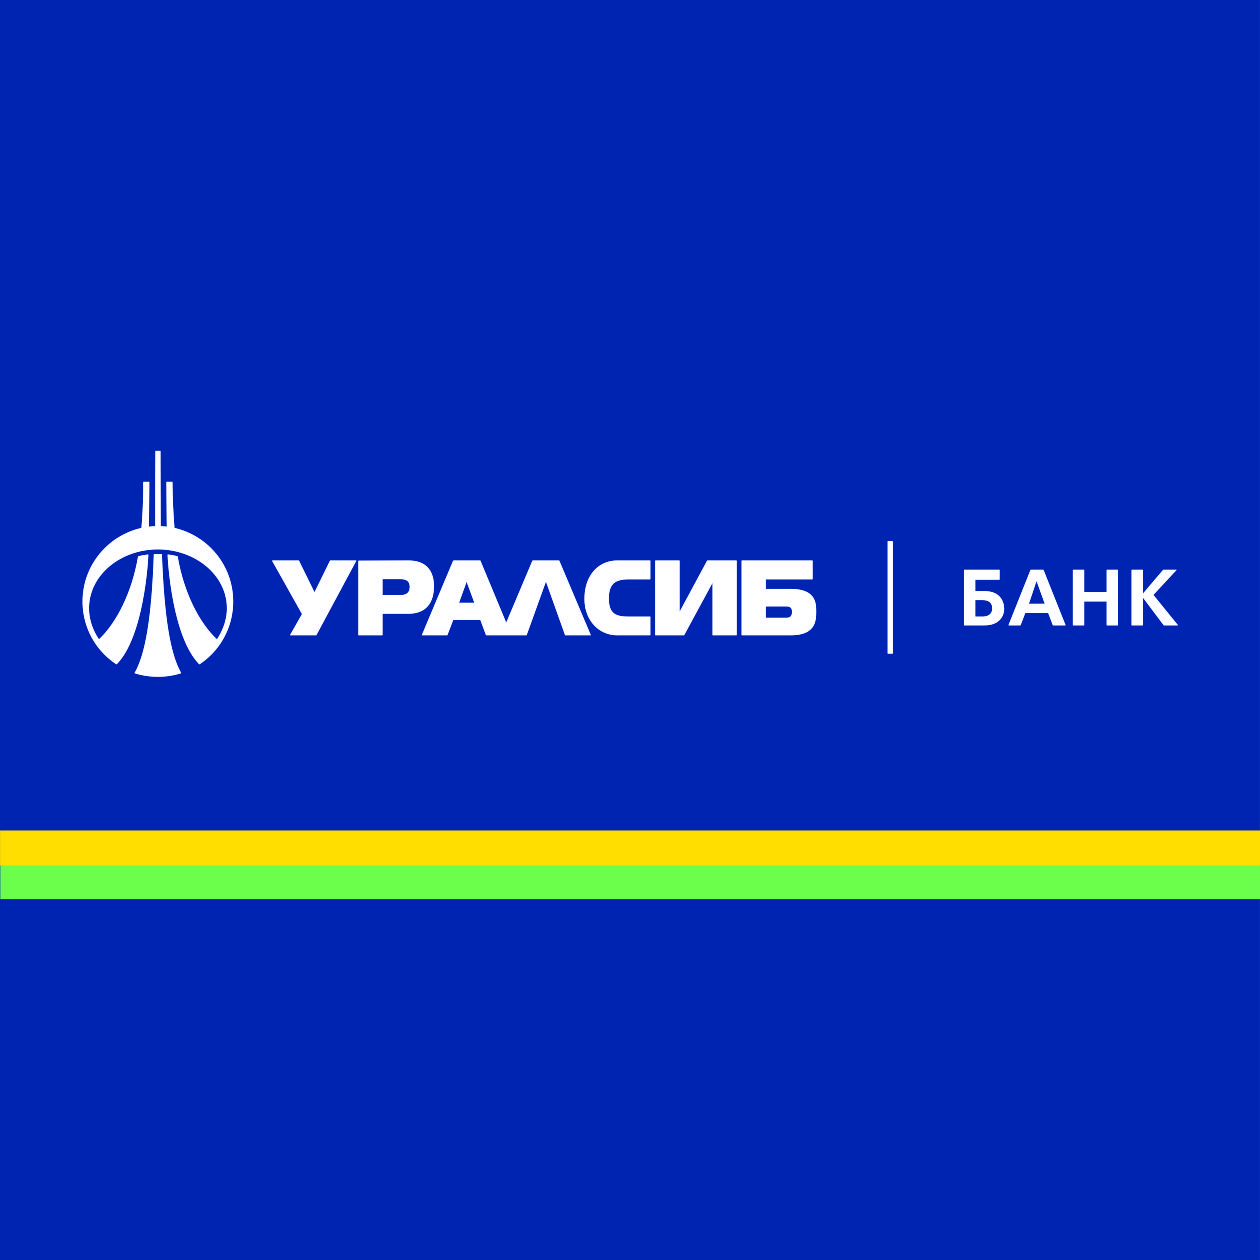 ПАО «БАНК УРАЛСИБ» сообщает о результатах деятельности за 2019 год  в соответствии с МСФО